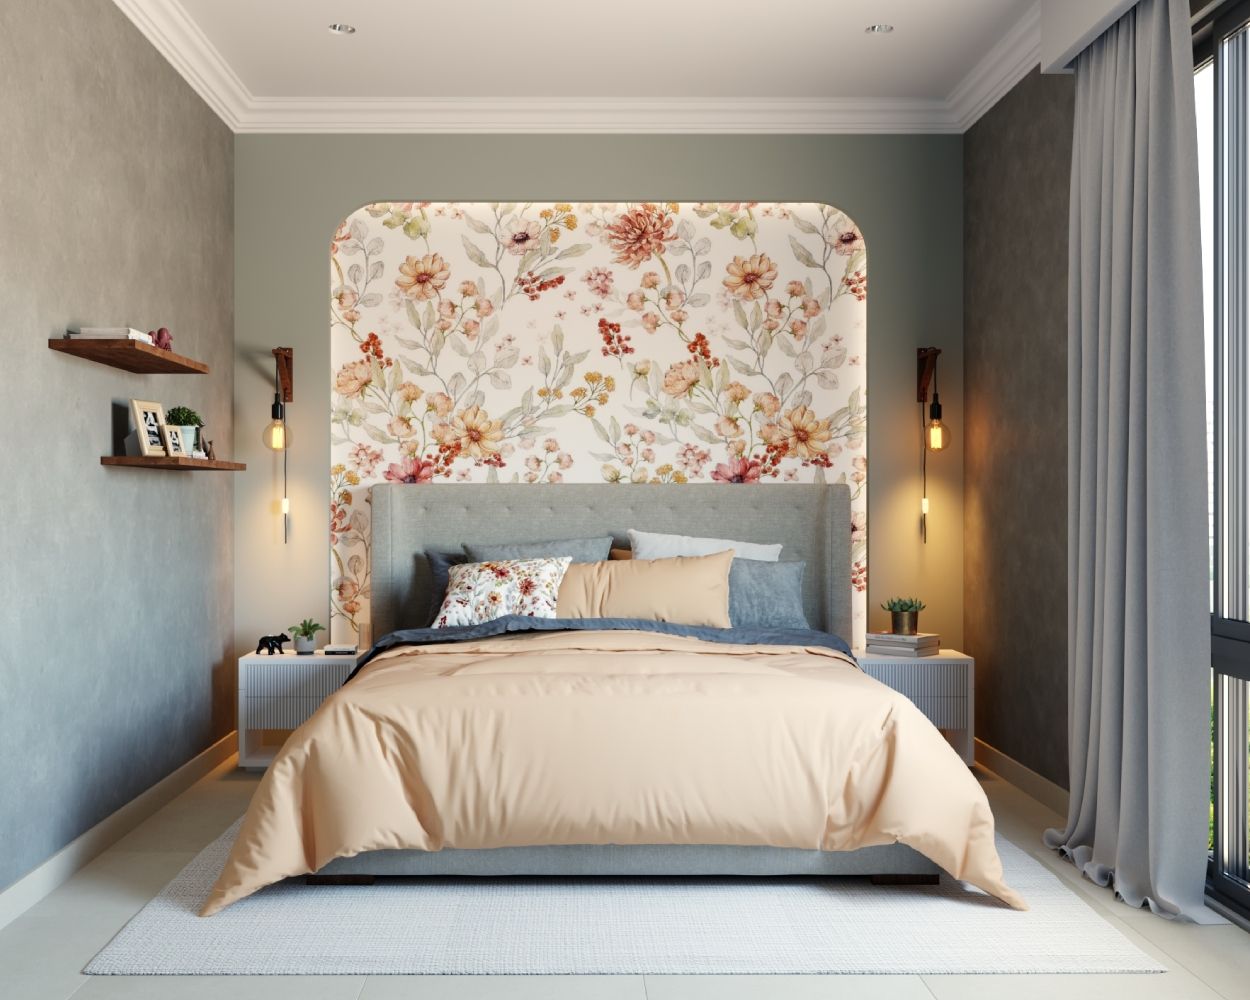 Vintage Floral Bedroom Wallpaper Design